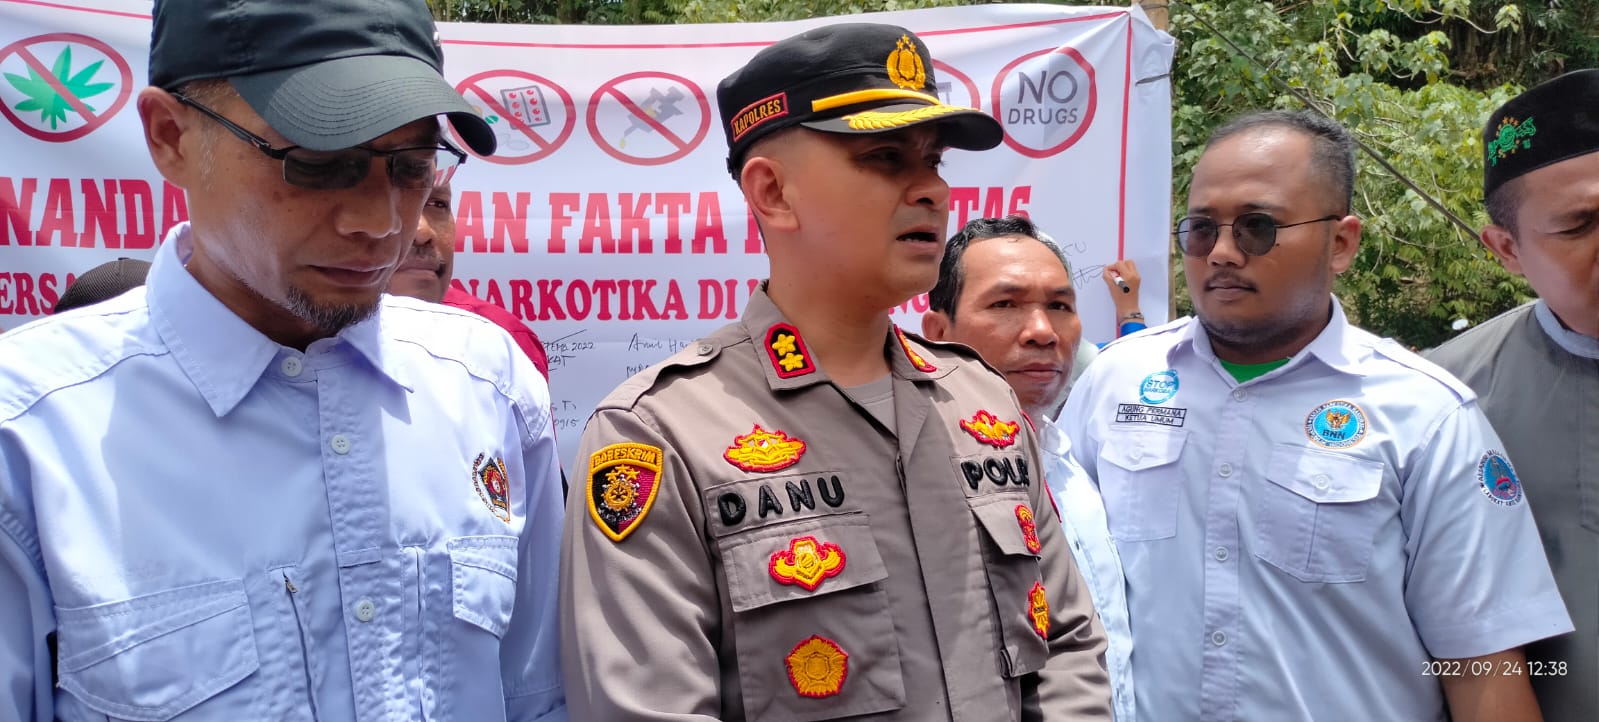 Kapolres Langkat AKBP Danu Pamungkas Totok SH SIK Mengajak Seluruh Elemen Masyarakat, Untuk Berperan Aktif Mengawasi Peredaran Dan Penyalahgunaan Narkotika.( Doc: DETIK Indonesia)